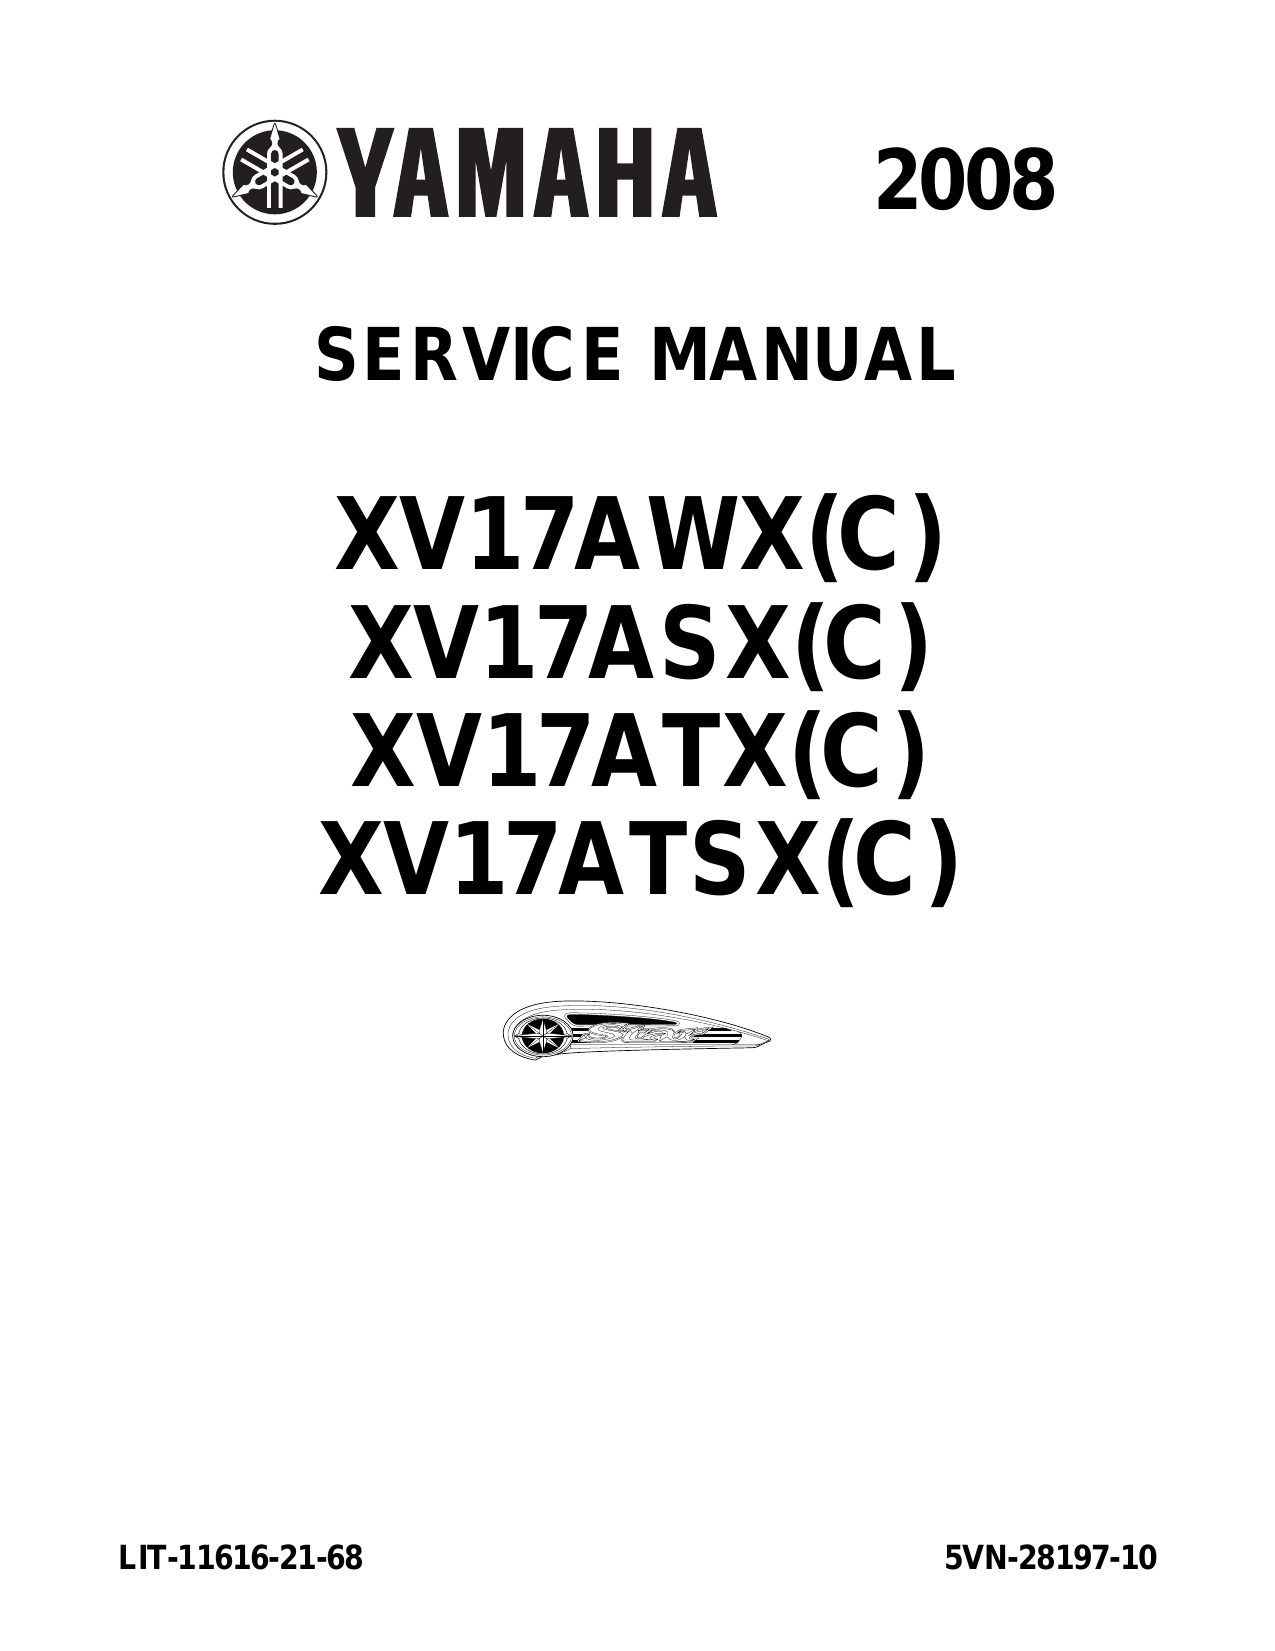 2008-2010 Yamaha XV17 RoadStar S repair manual Preview image 1